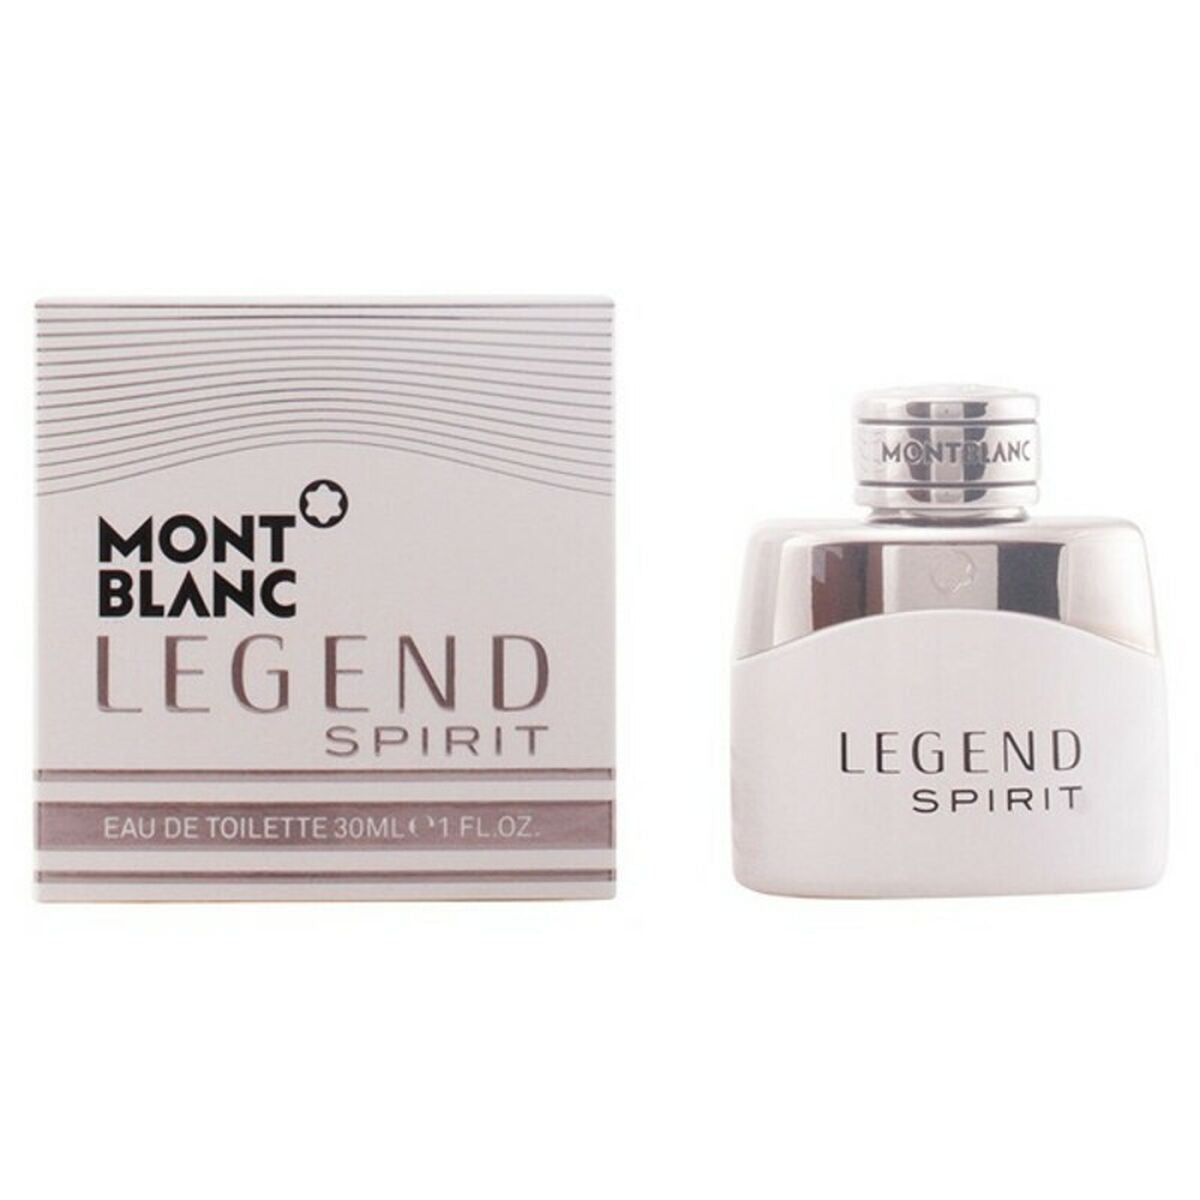 Spiritul legendei parfumului pentru bărbați Montblanc edt